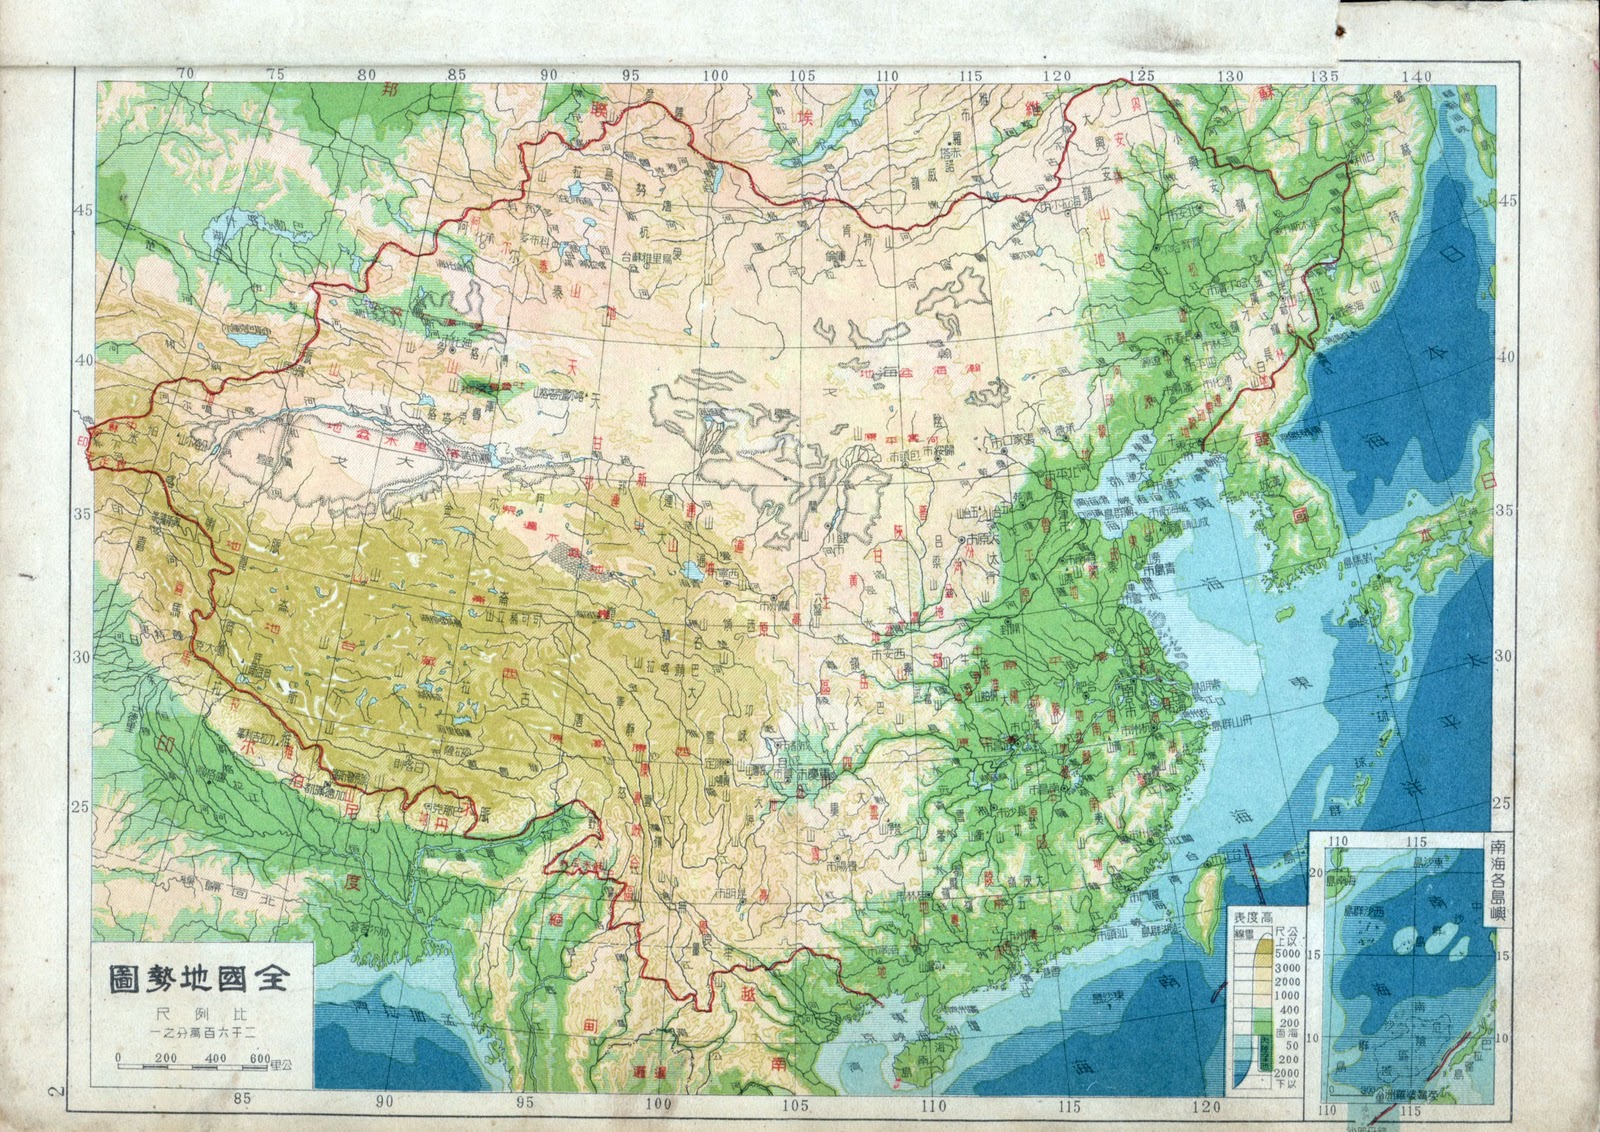 Diarios de V 2.0: 所有的中国地图. Todos los mapas de China para descargar Gratis